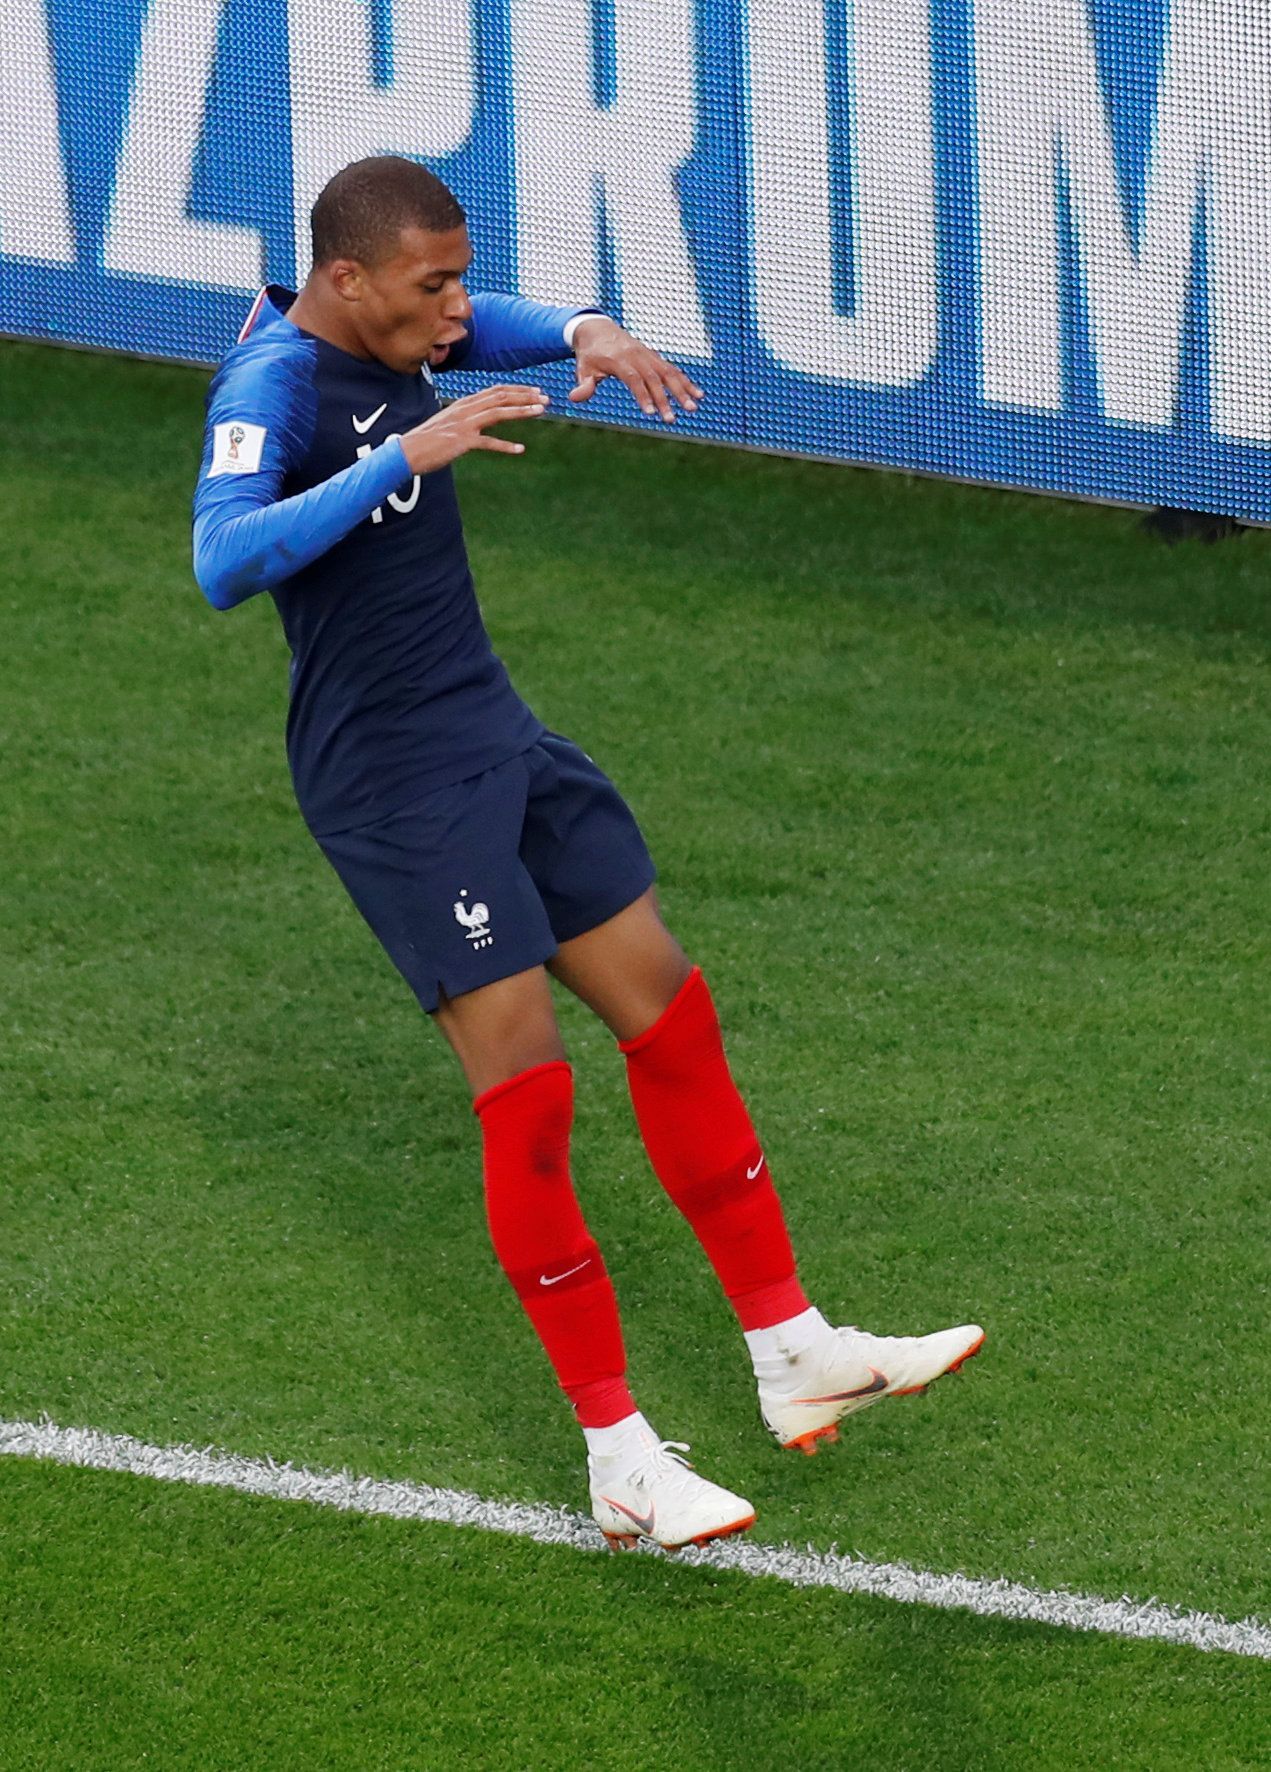 Kylian Mbappé slaví gól v zápase Francie - Peru na MS 2018